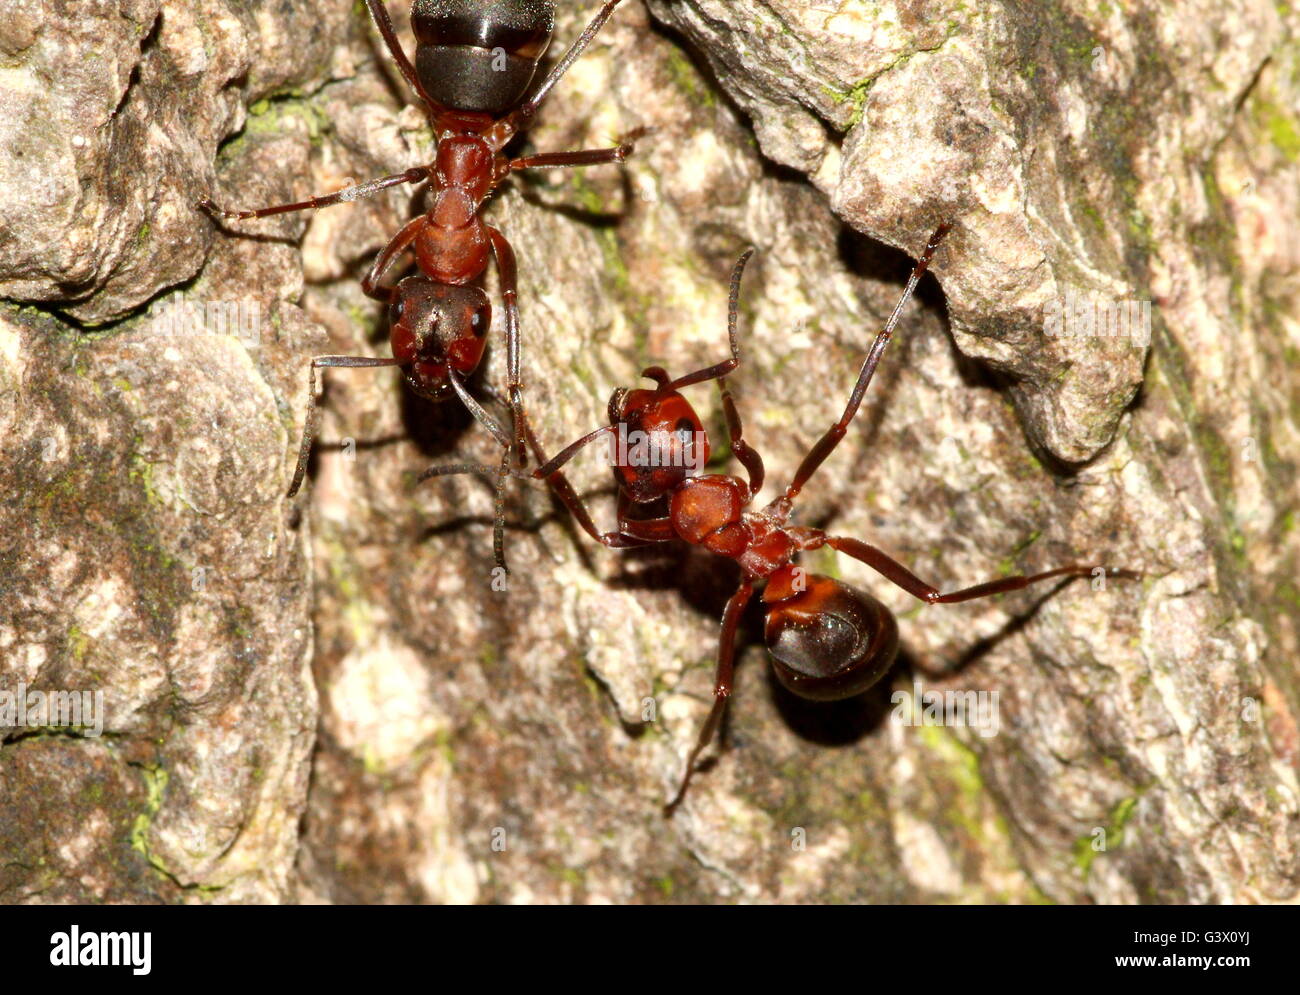 Primer plano de dos europeos hormigas de madera roja (Formica polyctena o Formica rufa) sobre un árbol Foto de stock